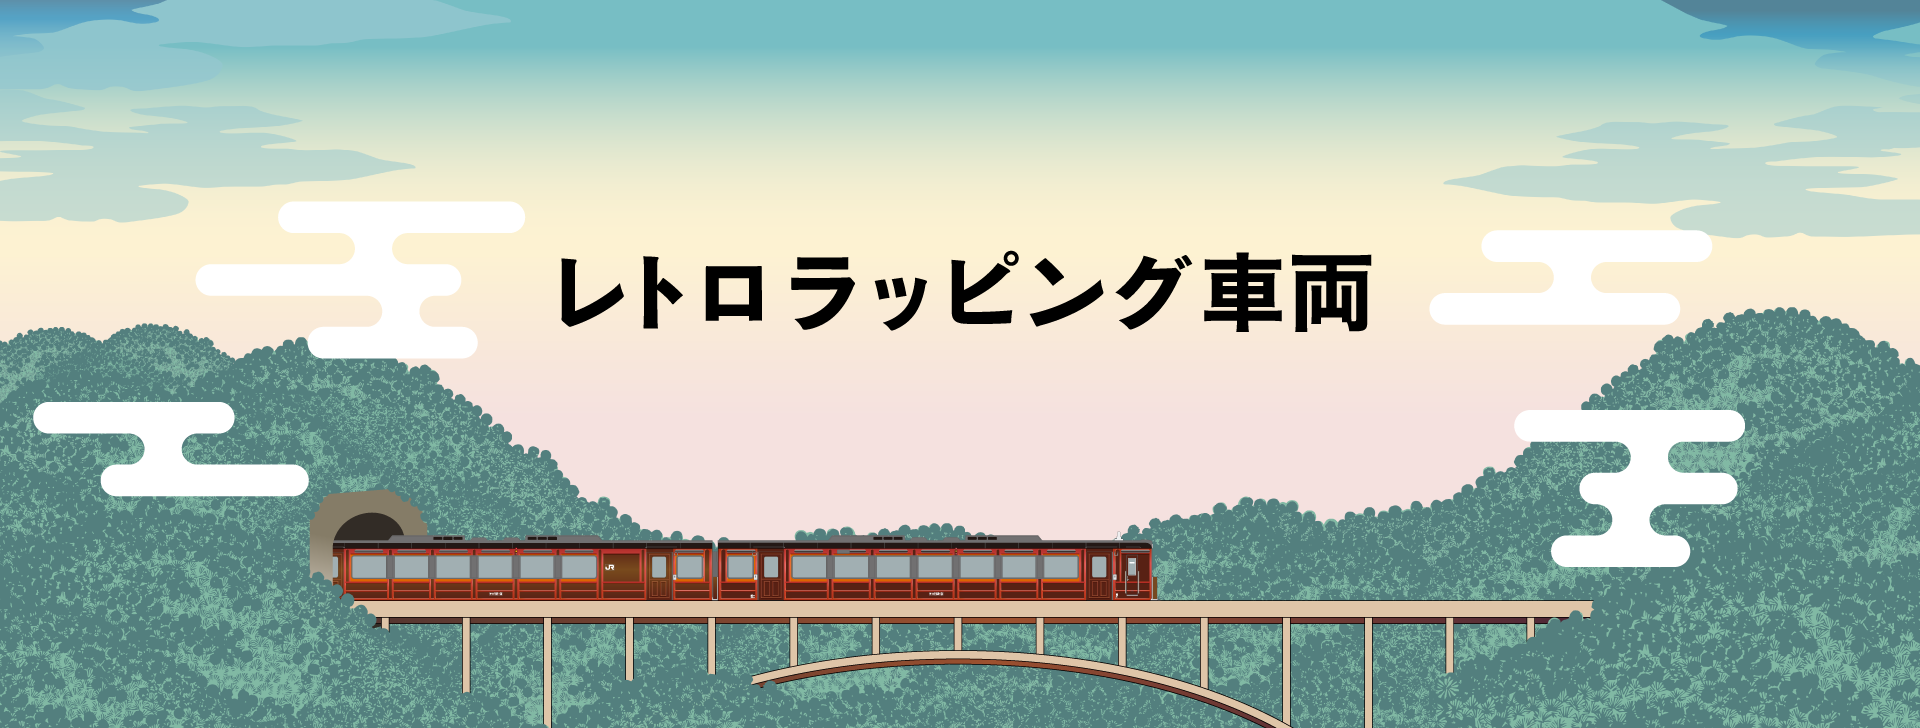 〜鉄道開業150年記念〜 レトロラッピング車両